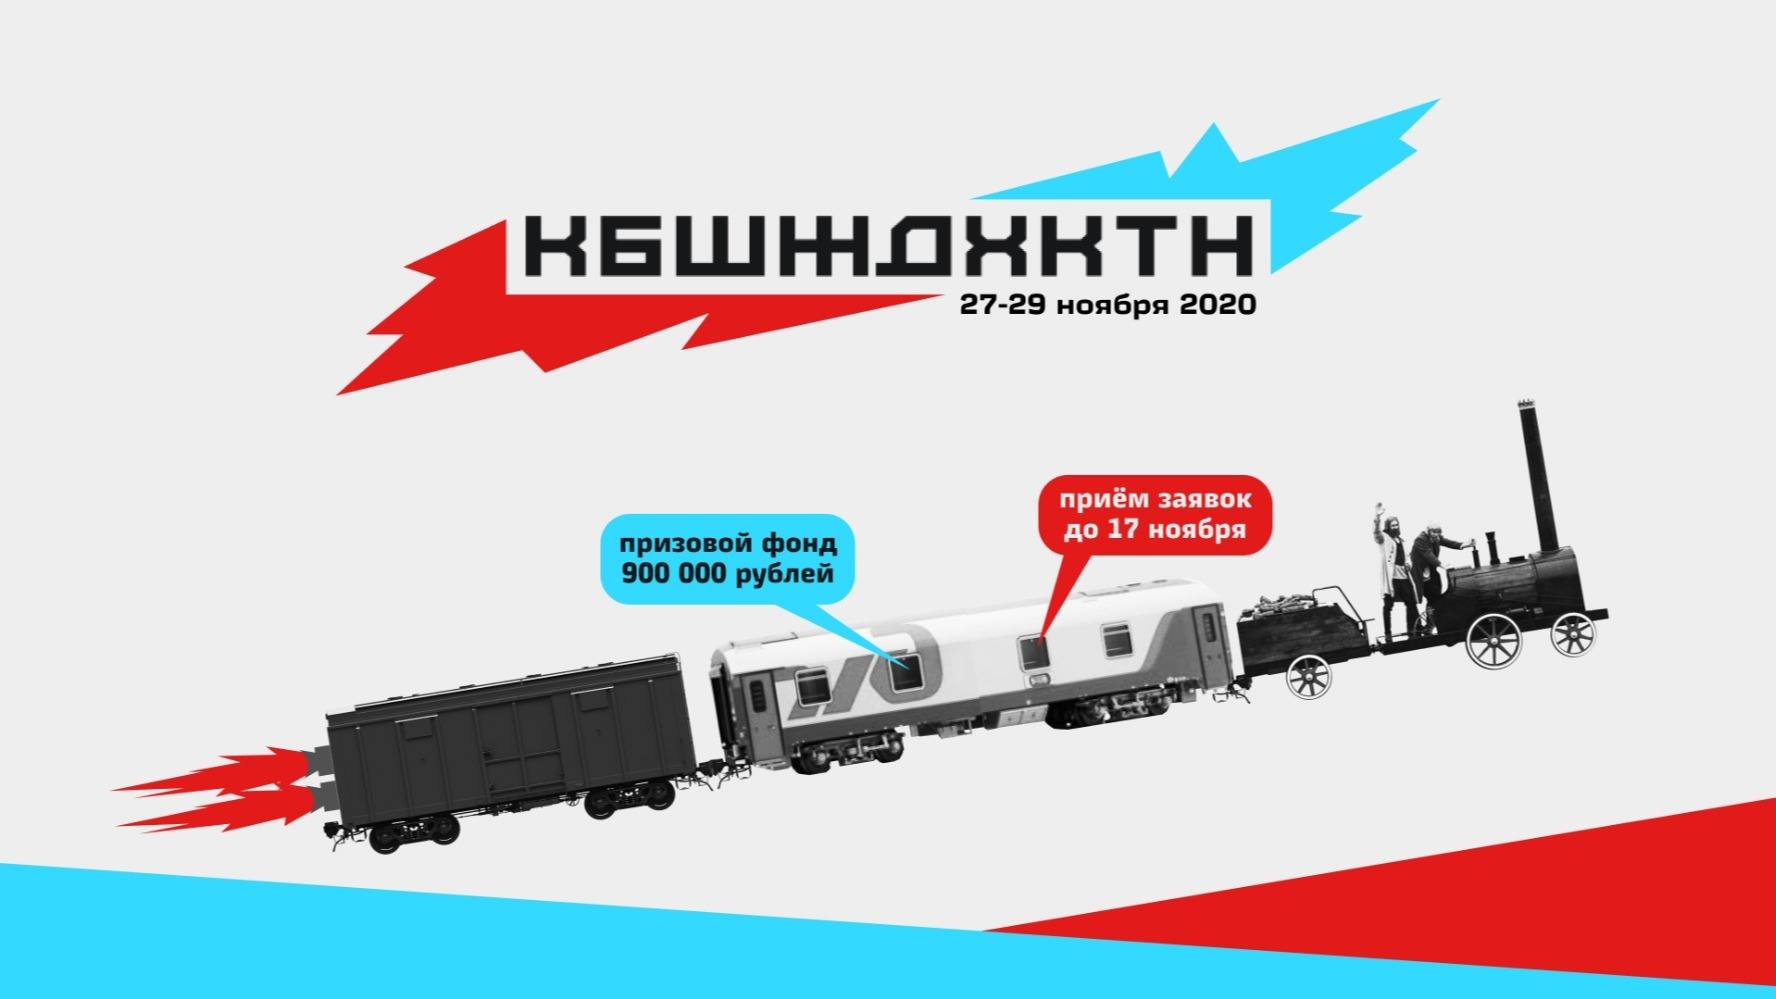 Как подружить Алису с российскими поездами: стартует первый онлайн-хакатон для решения технологических задач и улучшения сервисов РЖД